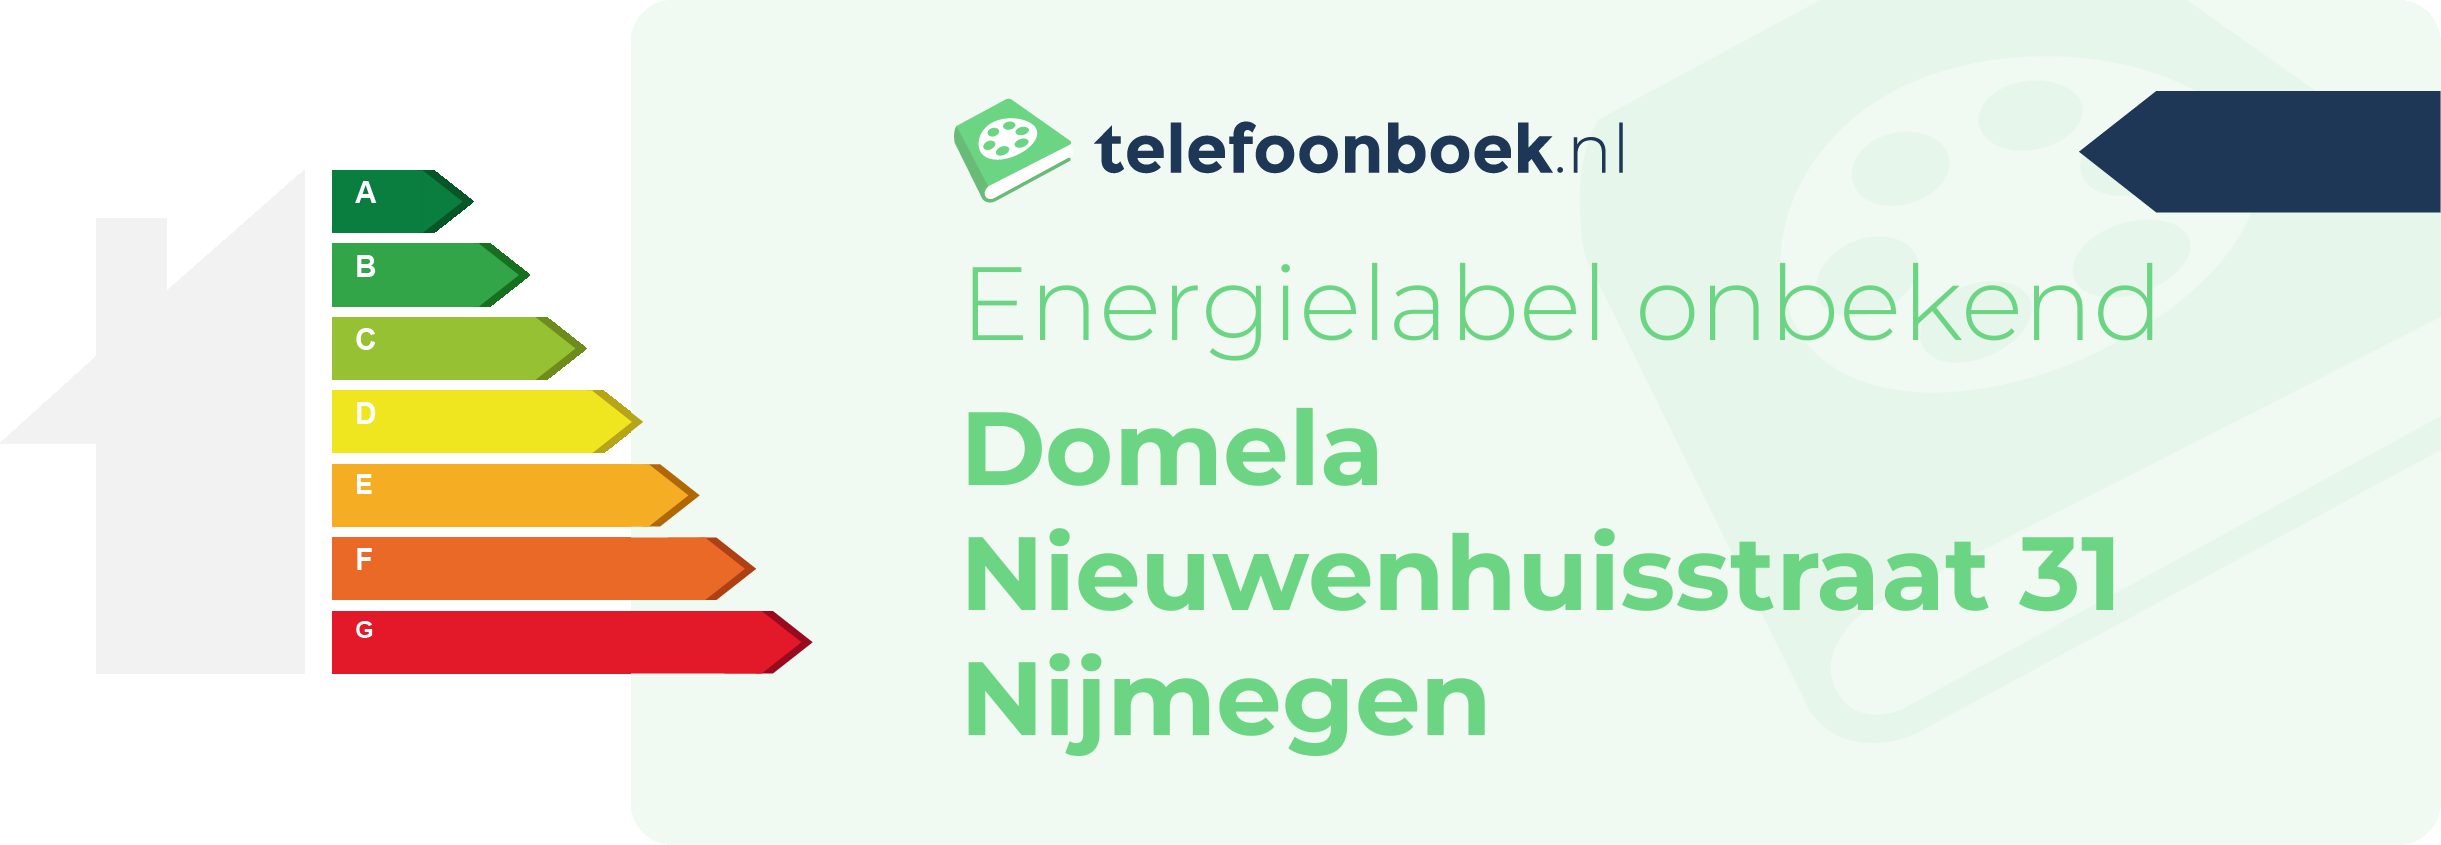 Energielabel Domela Nieuwenhuisstraat 31 Nijmegen